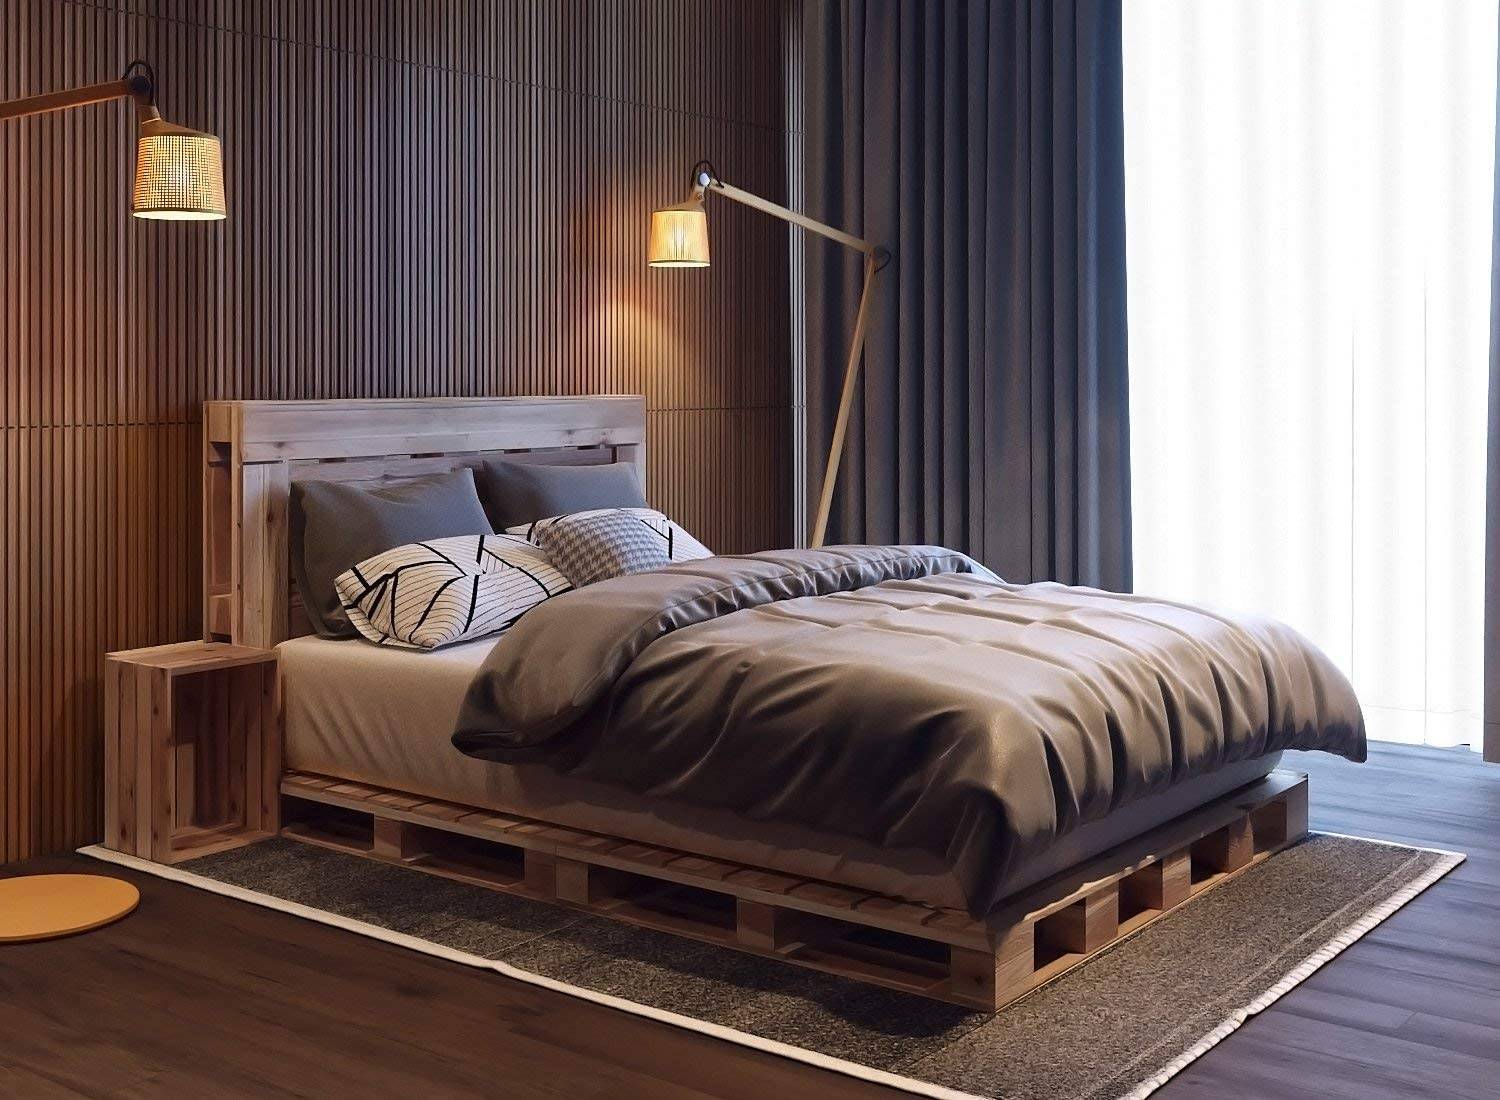 Gỗ pallet không chỉ thích hợp cho phong cách mộc mạc mà còn phù hợp với cả chủ nhân yêu thích sự sang trọng. Sự phối hợp của giường, táp đầu giường gỗ pallet và hệ thống lam gỗ, đèn sàn dáng cao càng tôn lên vẻ đẹp thanh lịch của không gian.